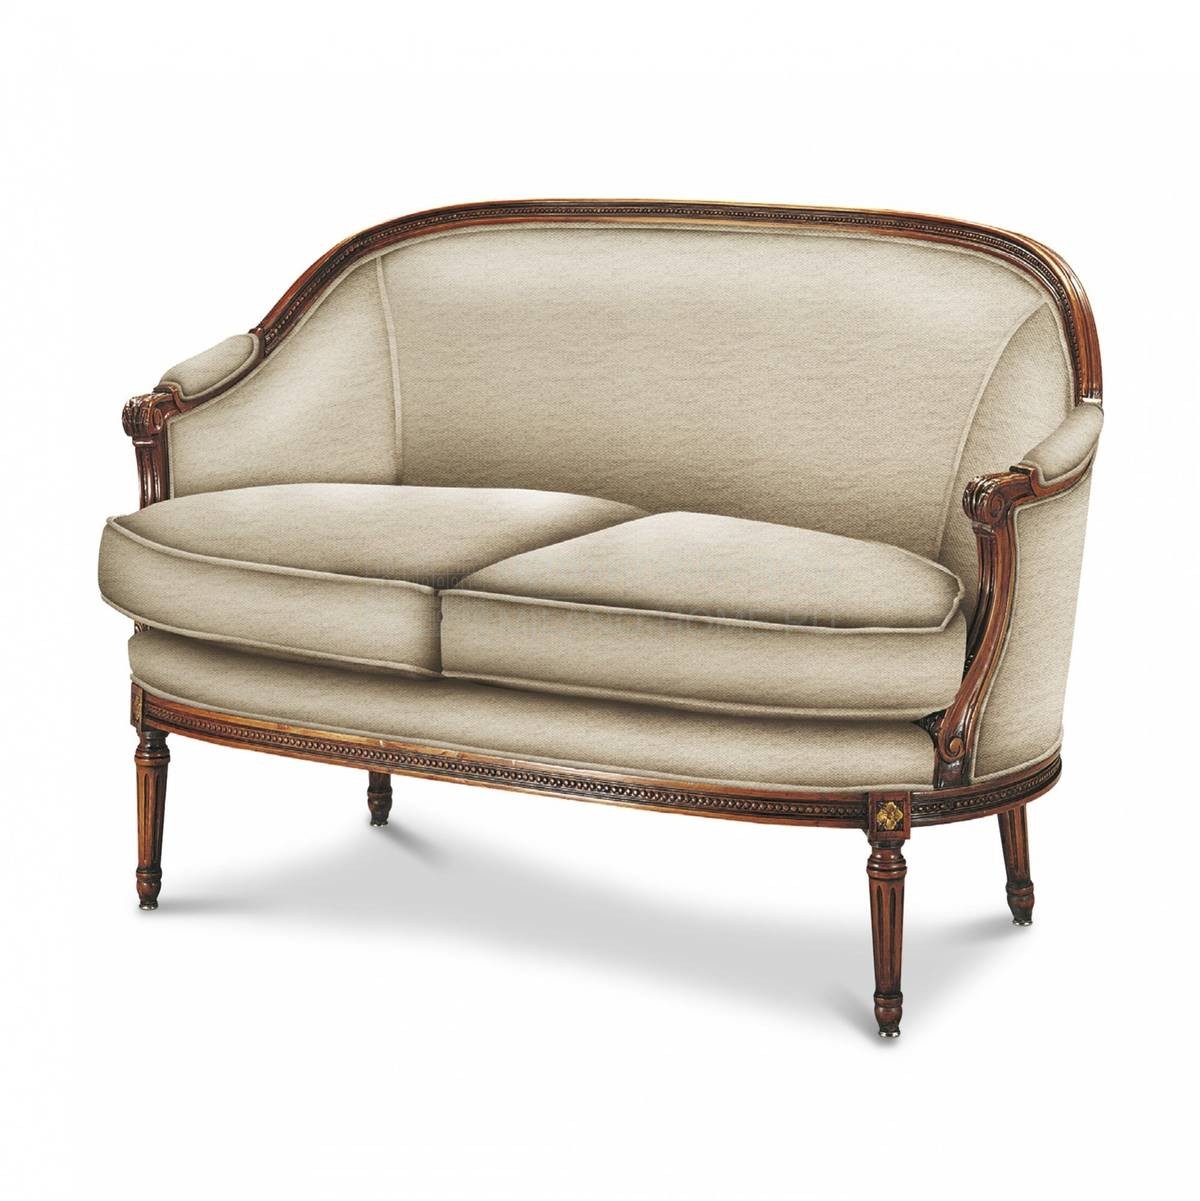 Прямой диван The Upholstery/D5C из Италии фабрики FRANCESCO MOLON